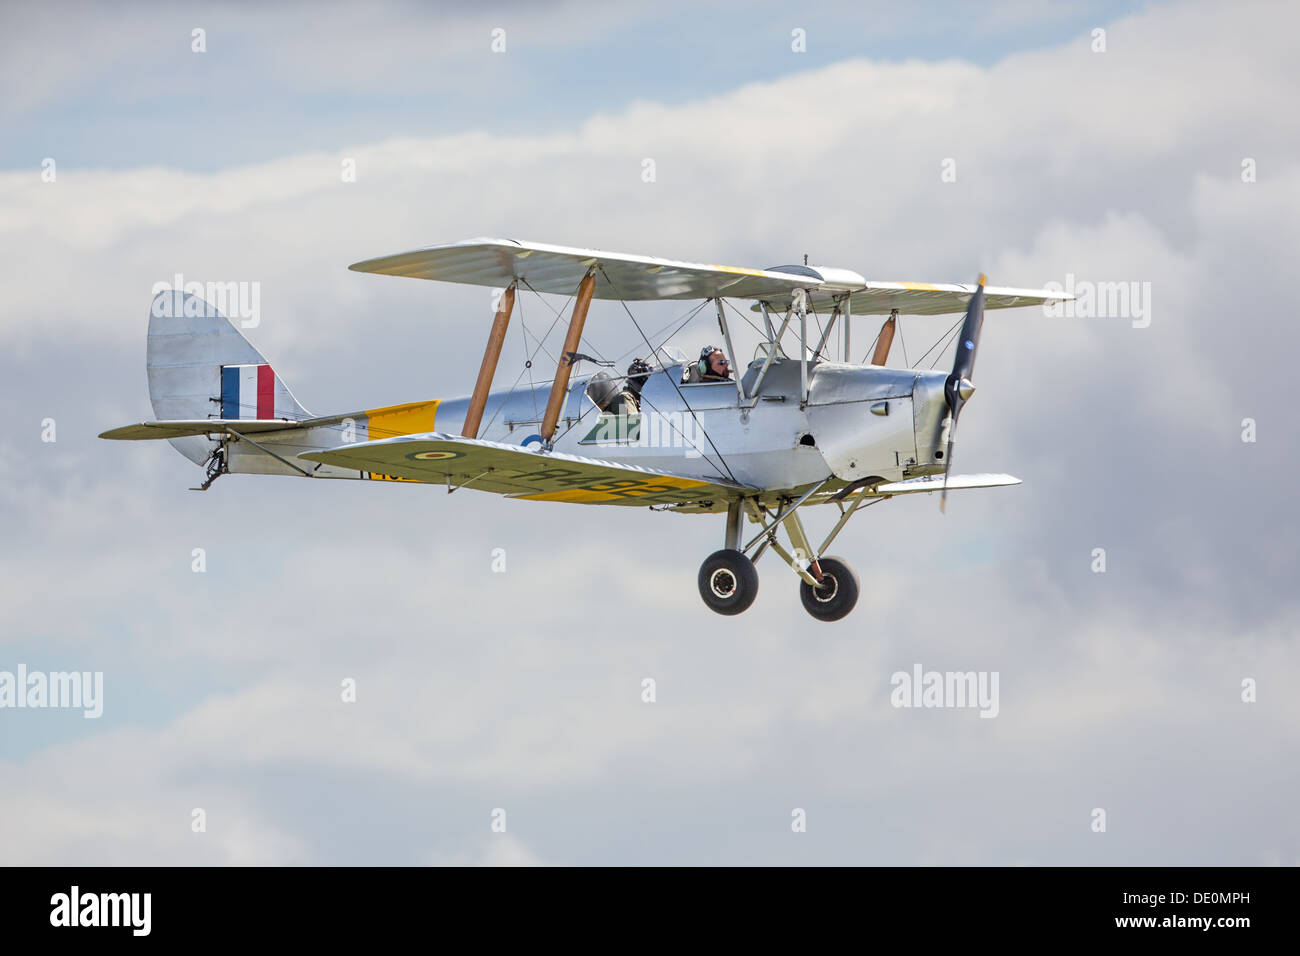 De Havilland Tiger Moth, un biplan en vol, vue de côté Banque D'Images